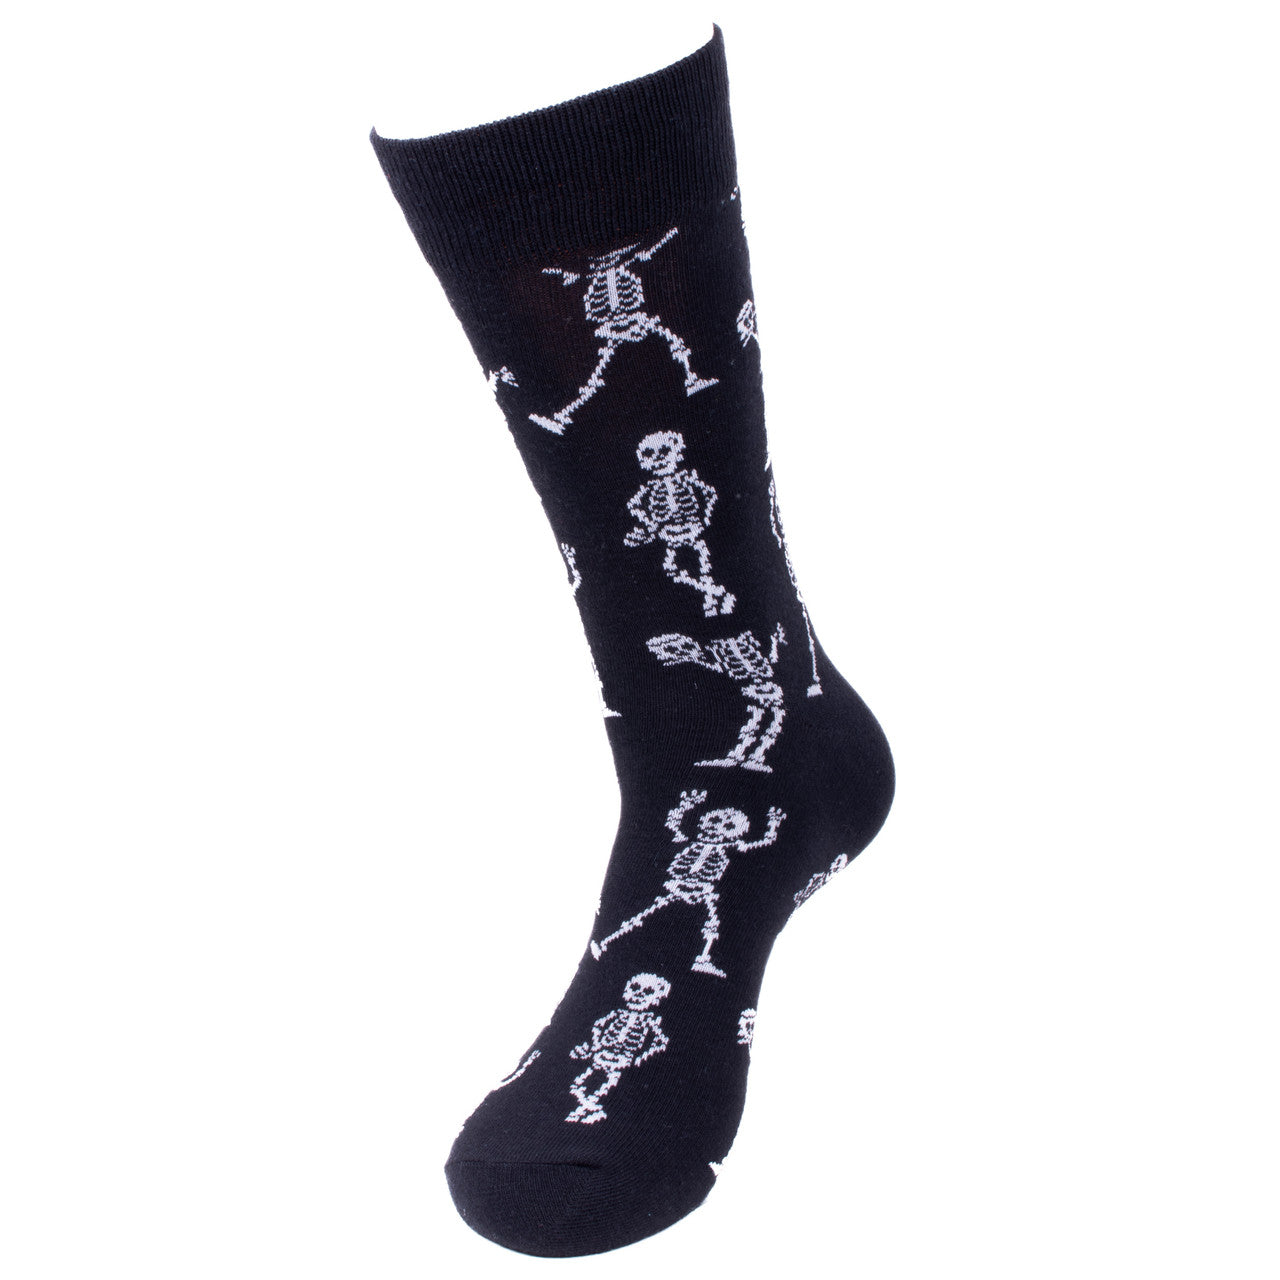 Men's Halloween Crew Socks - Skeleton Socks